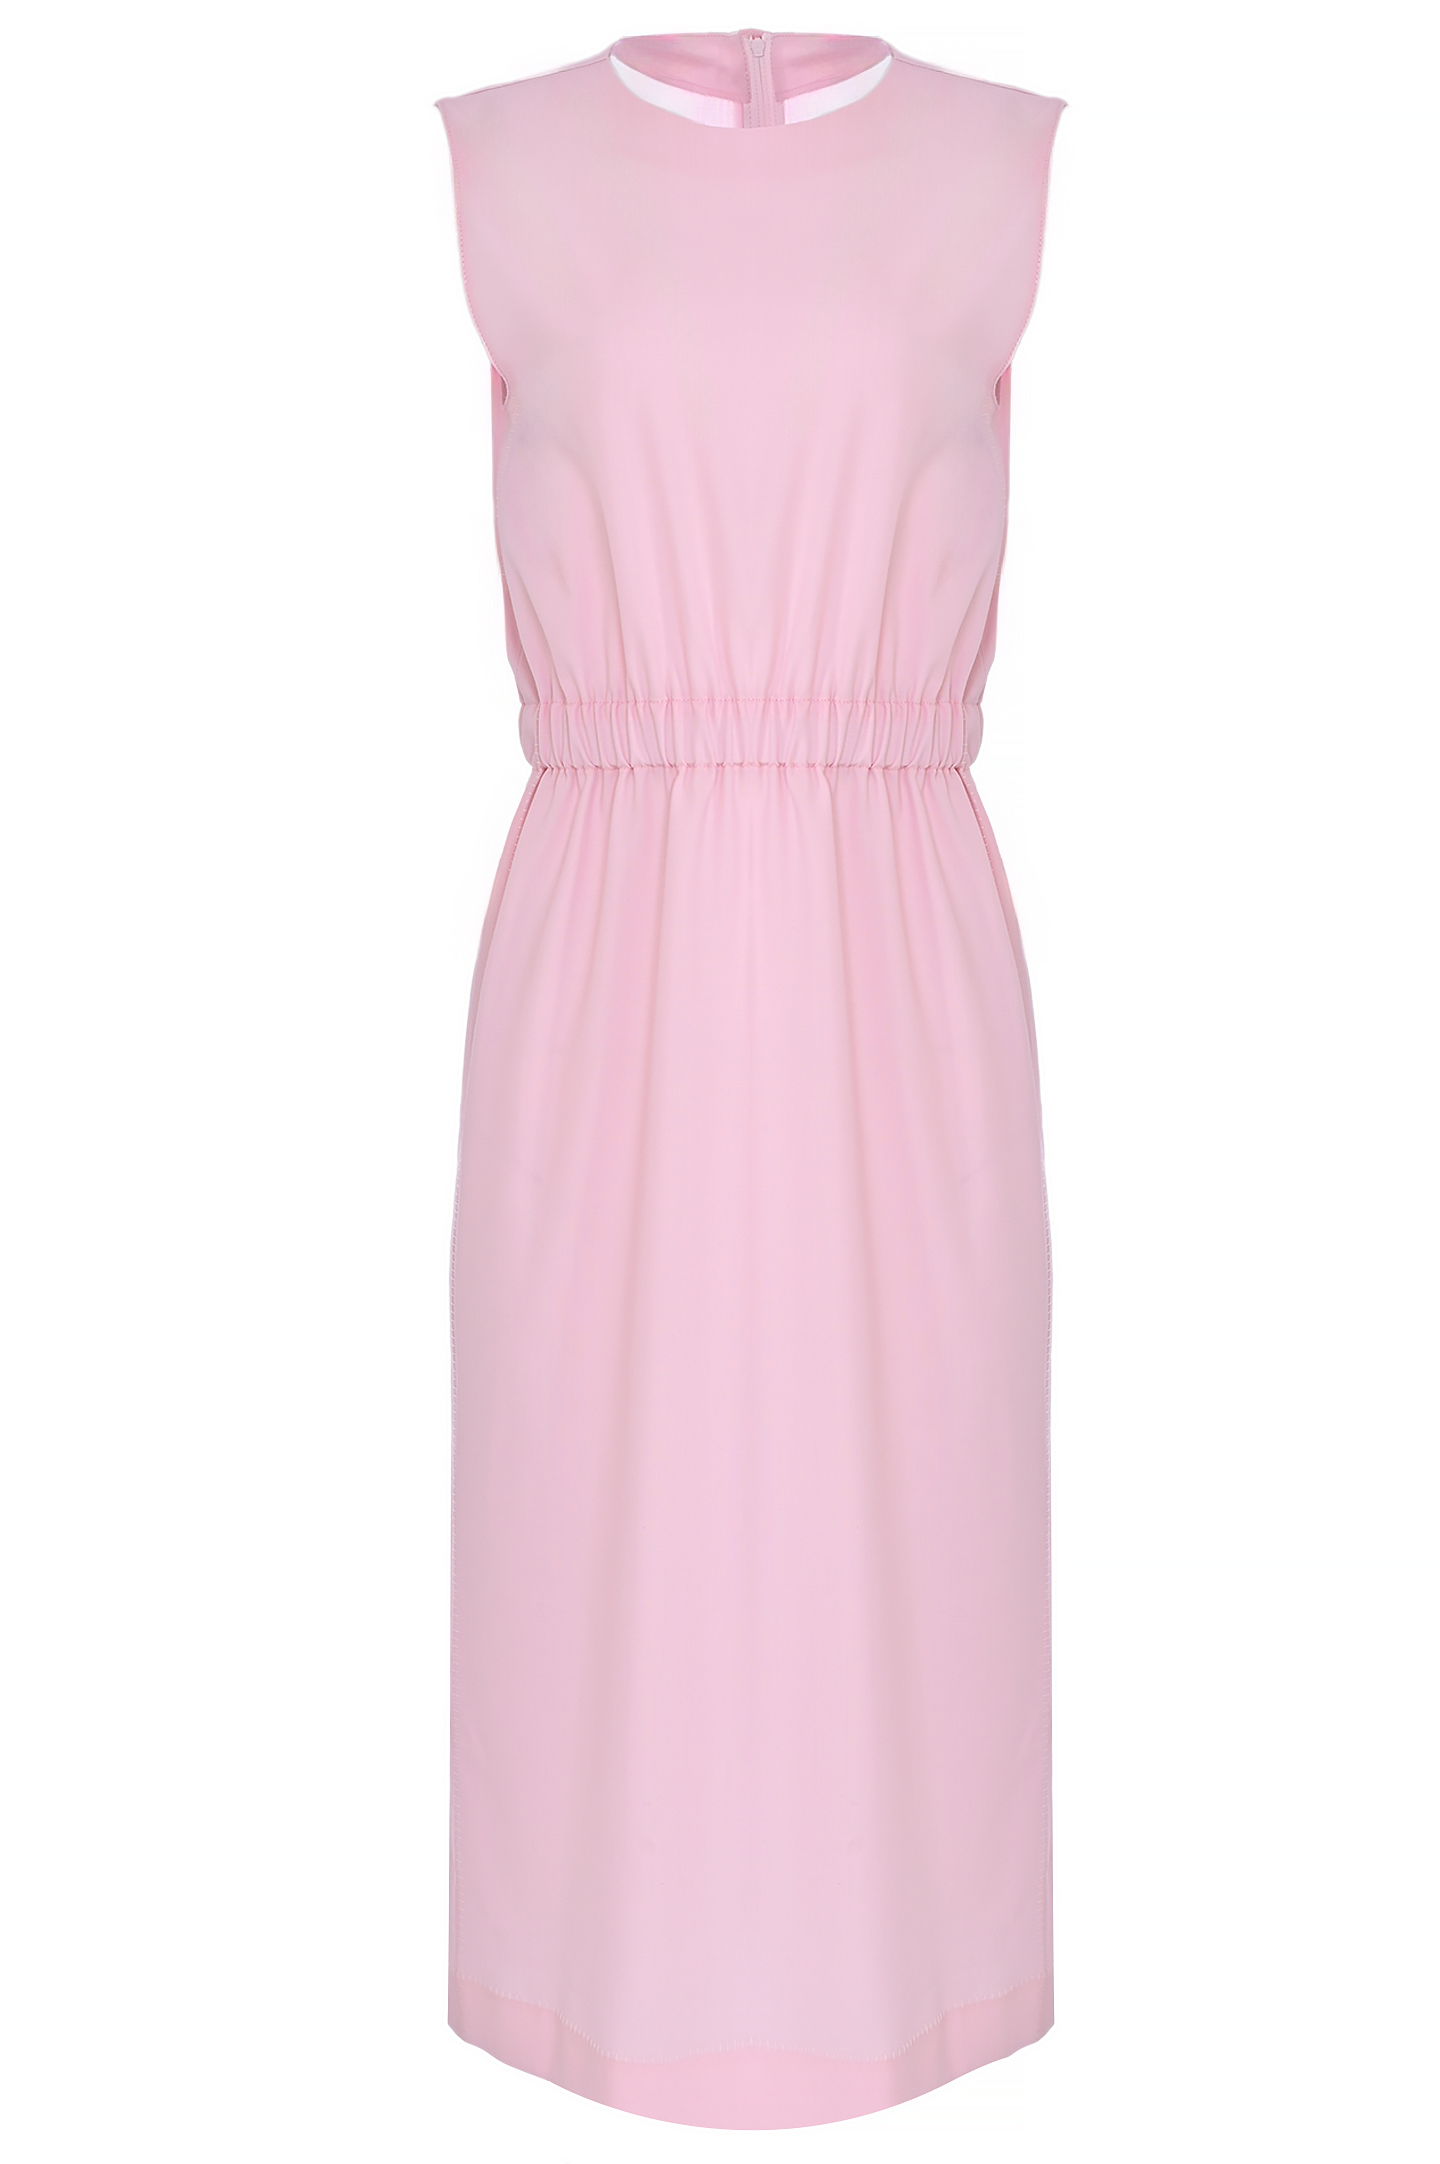 Платье FABIANA FILIPPI ABD264F125 I937, цвет: Розовый, Женский